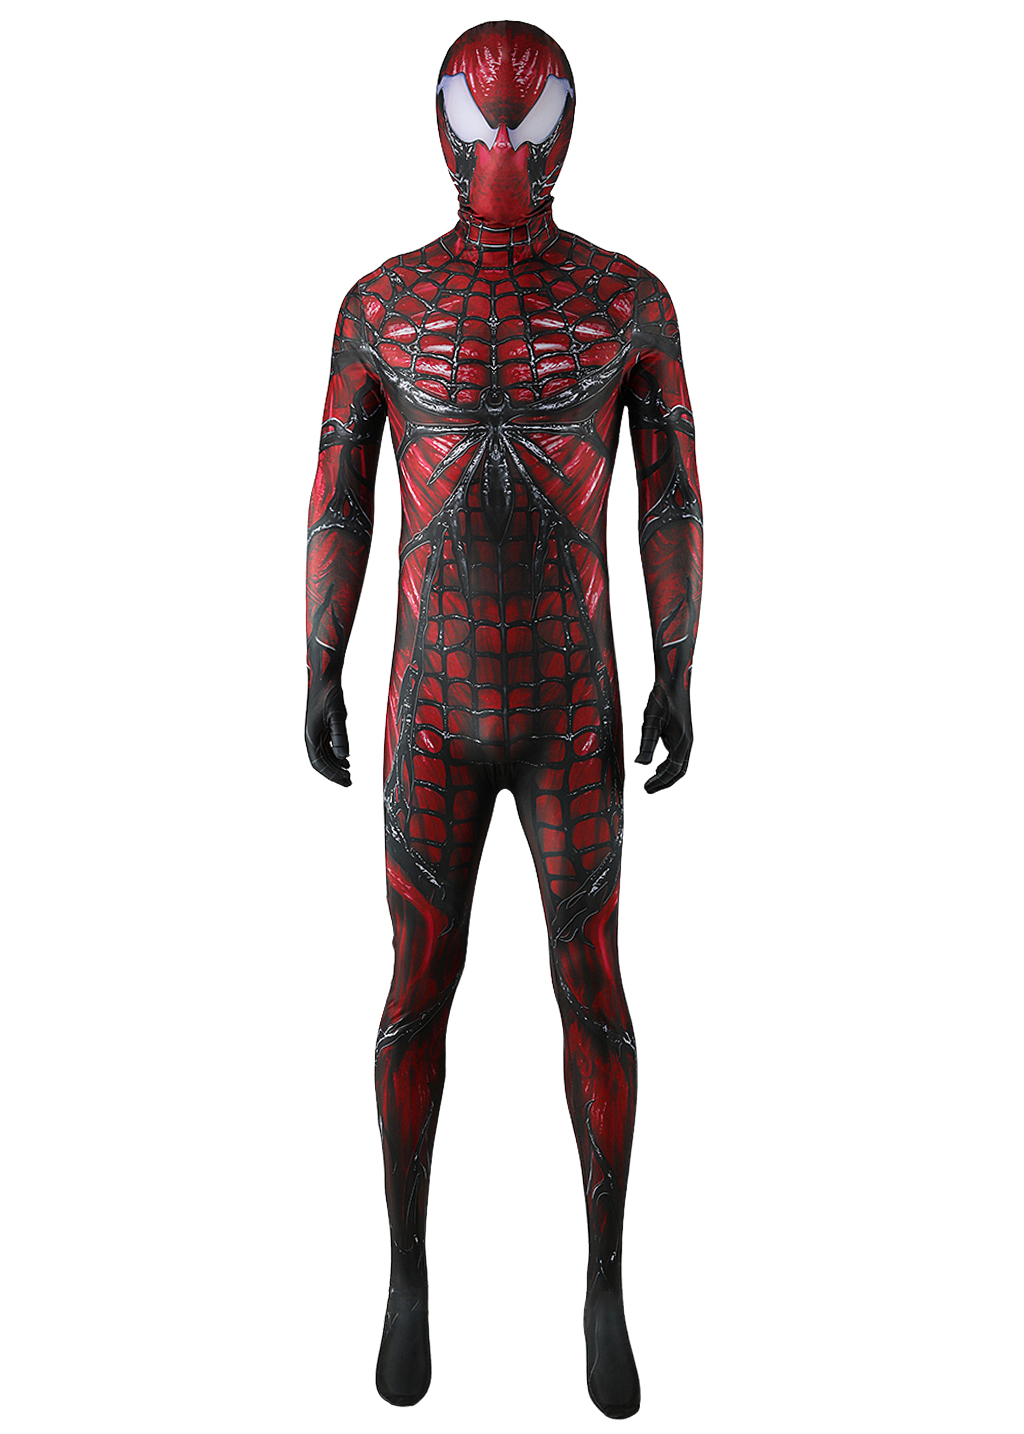 Venom Costume Marvel's Spider-man 2 Bodysuit Cosplay for Adult Kids Black Red Ver